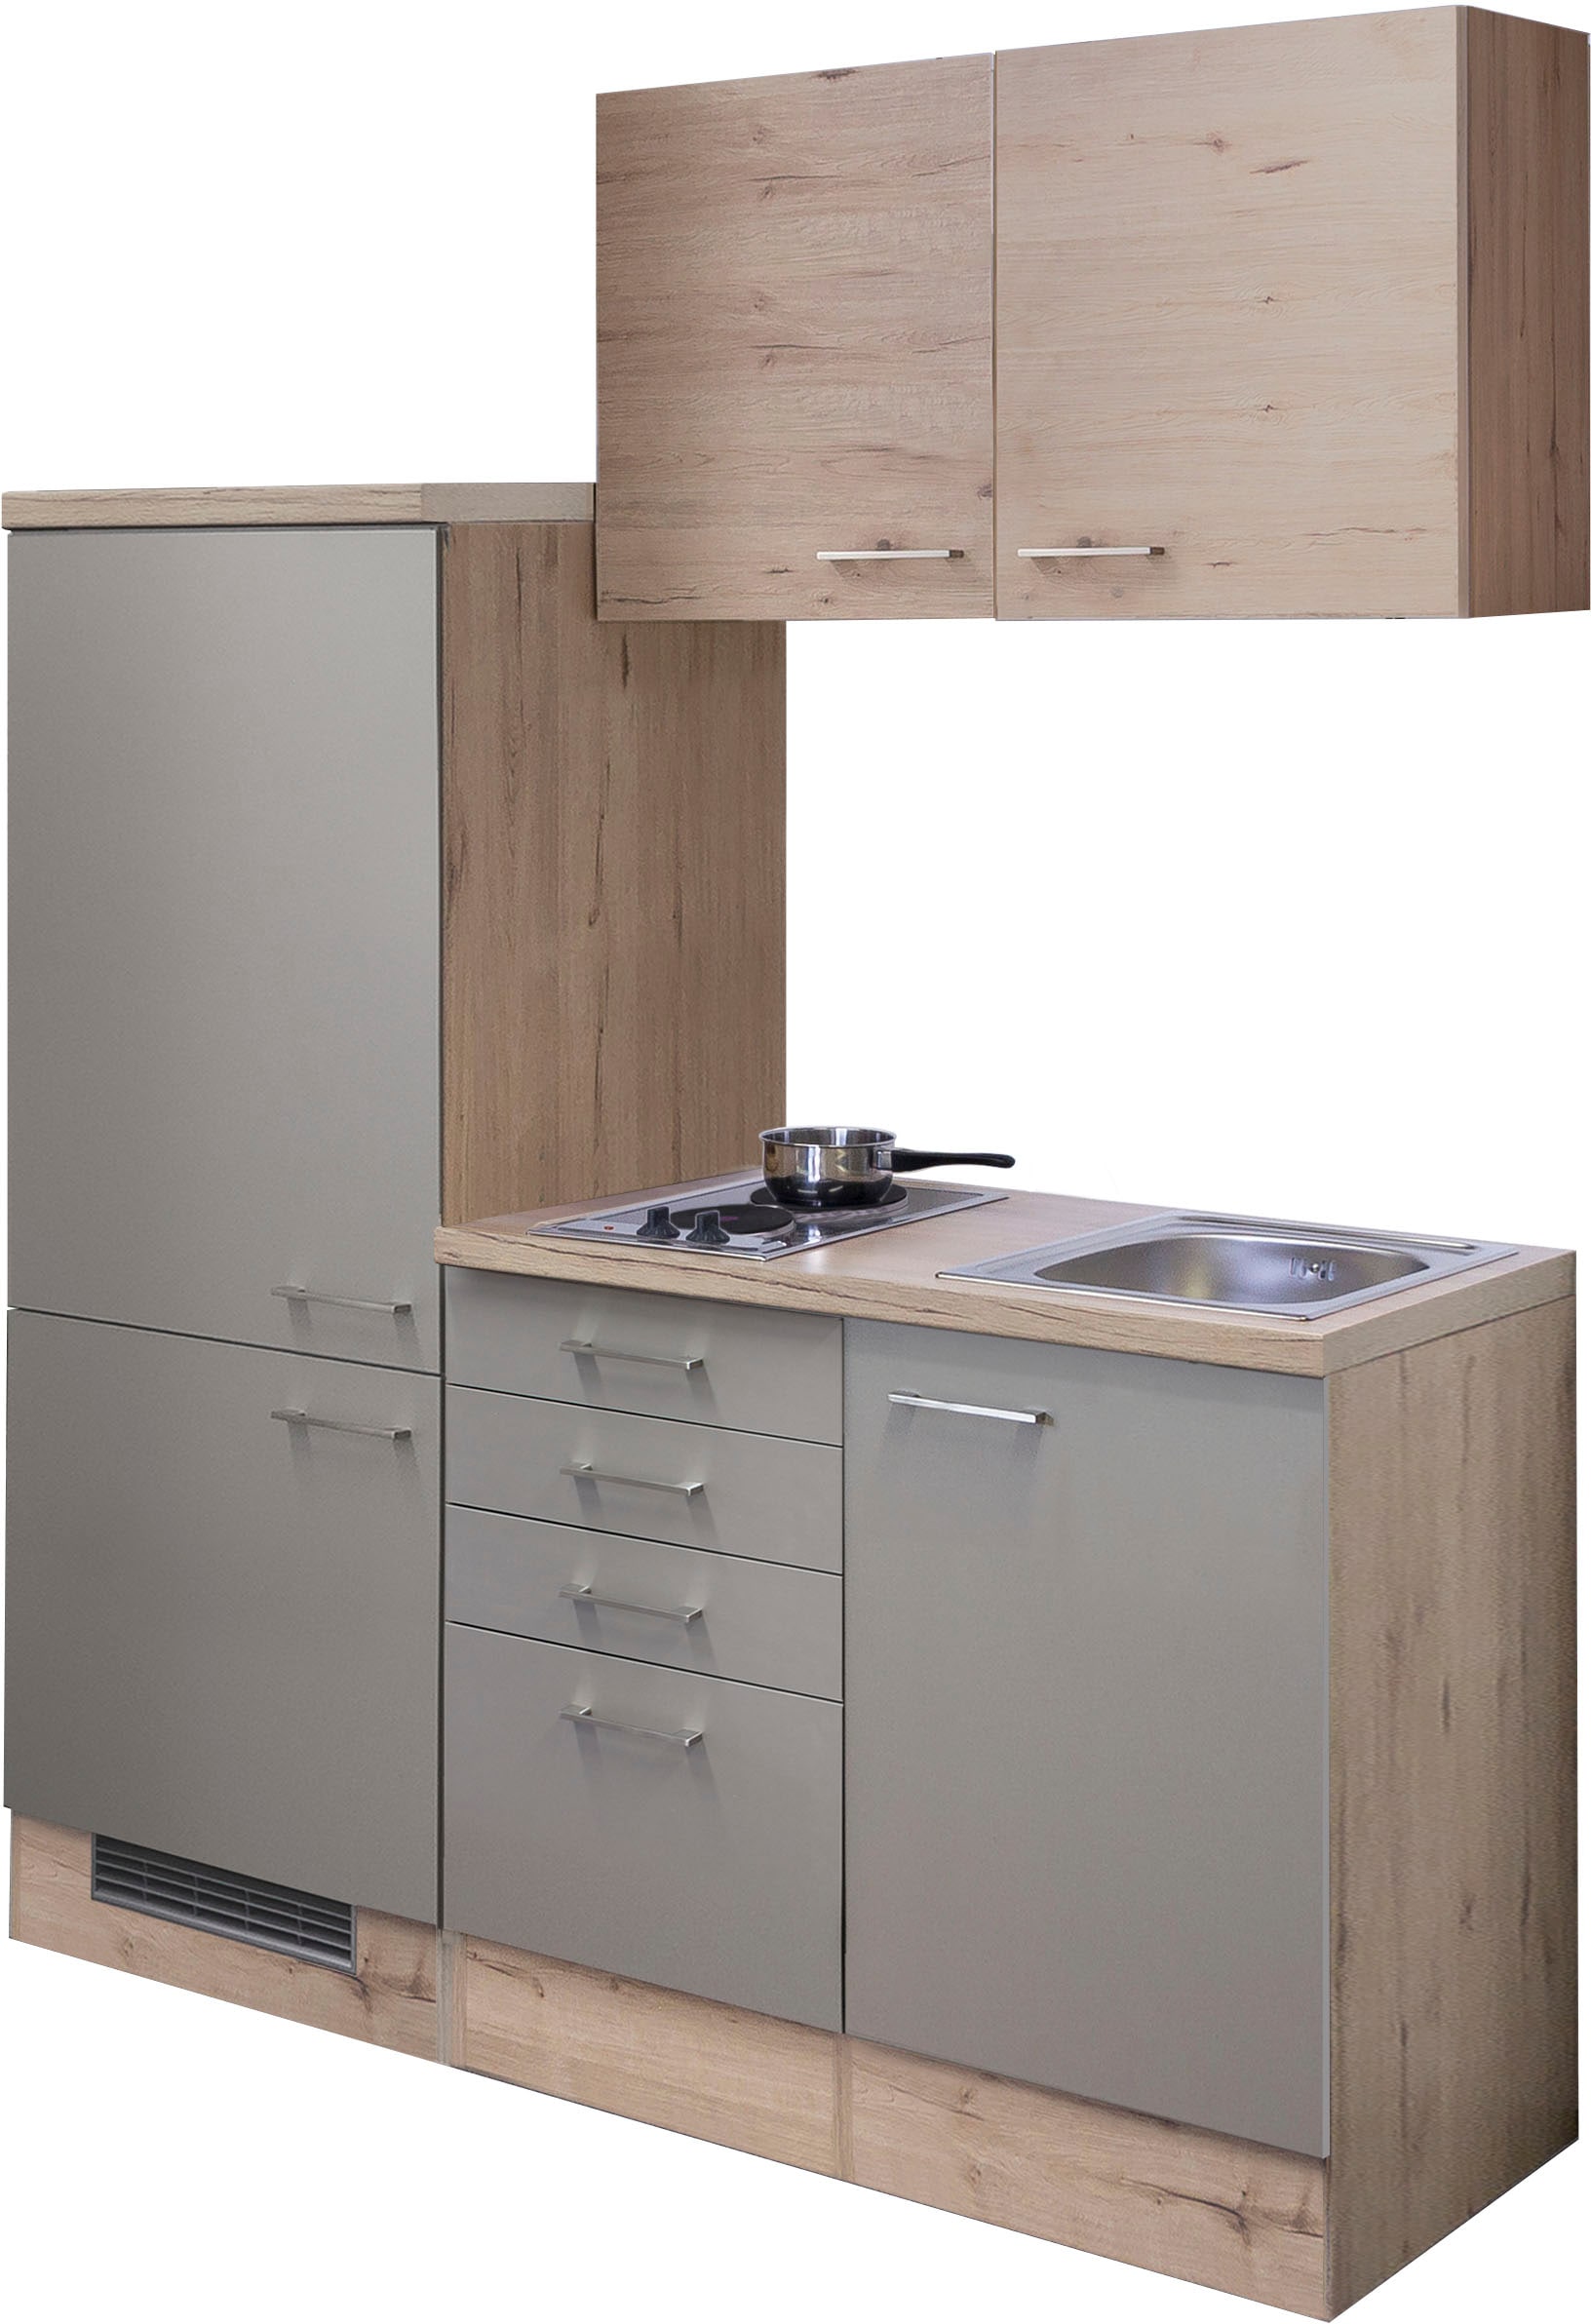 Küche »Riva«, Gesamtbreite 160 cm, mit Einbau-Kühlschrank, Kochfeld und Spüle etc.